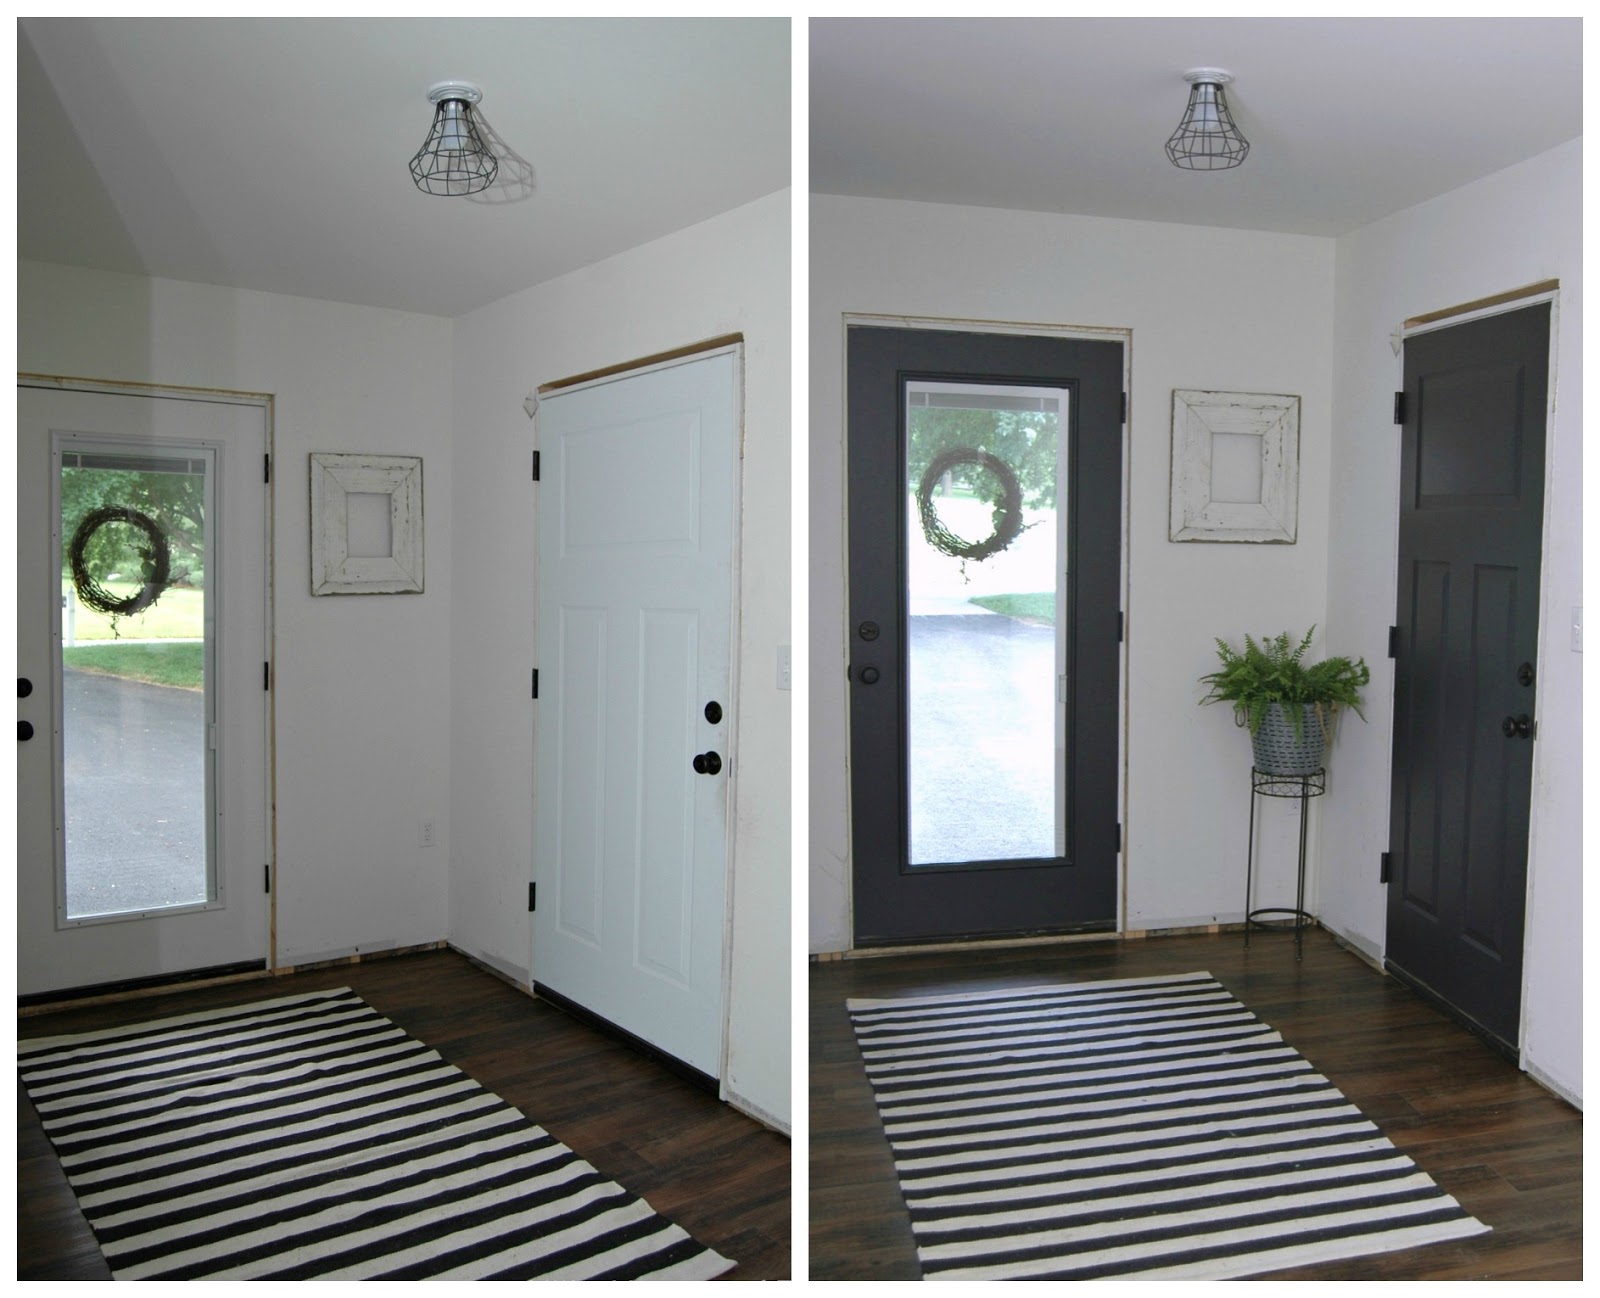 new foyer, black trim, updated front door, black closet door, interior design on a budget